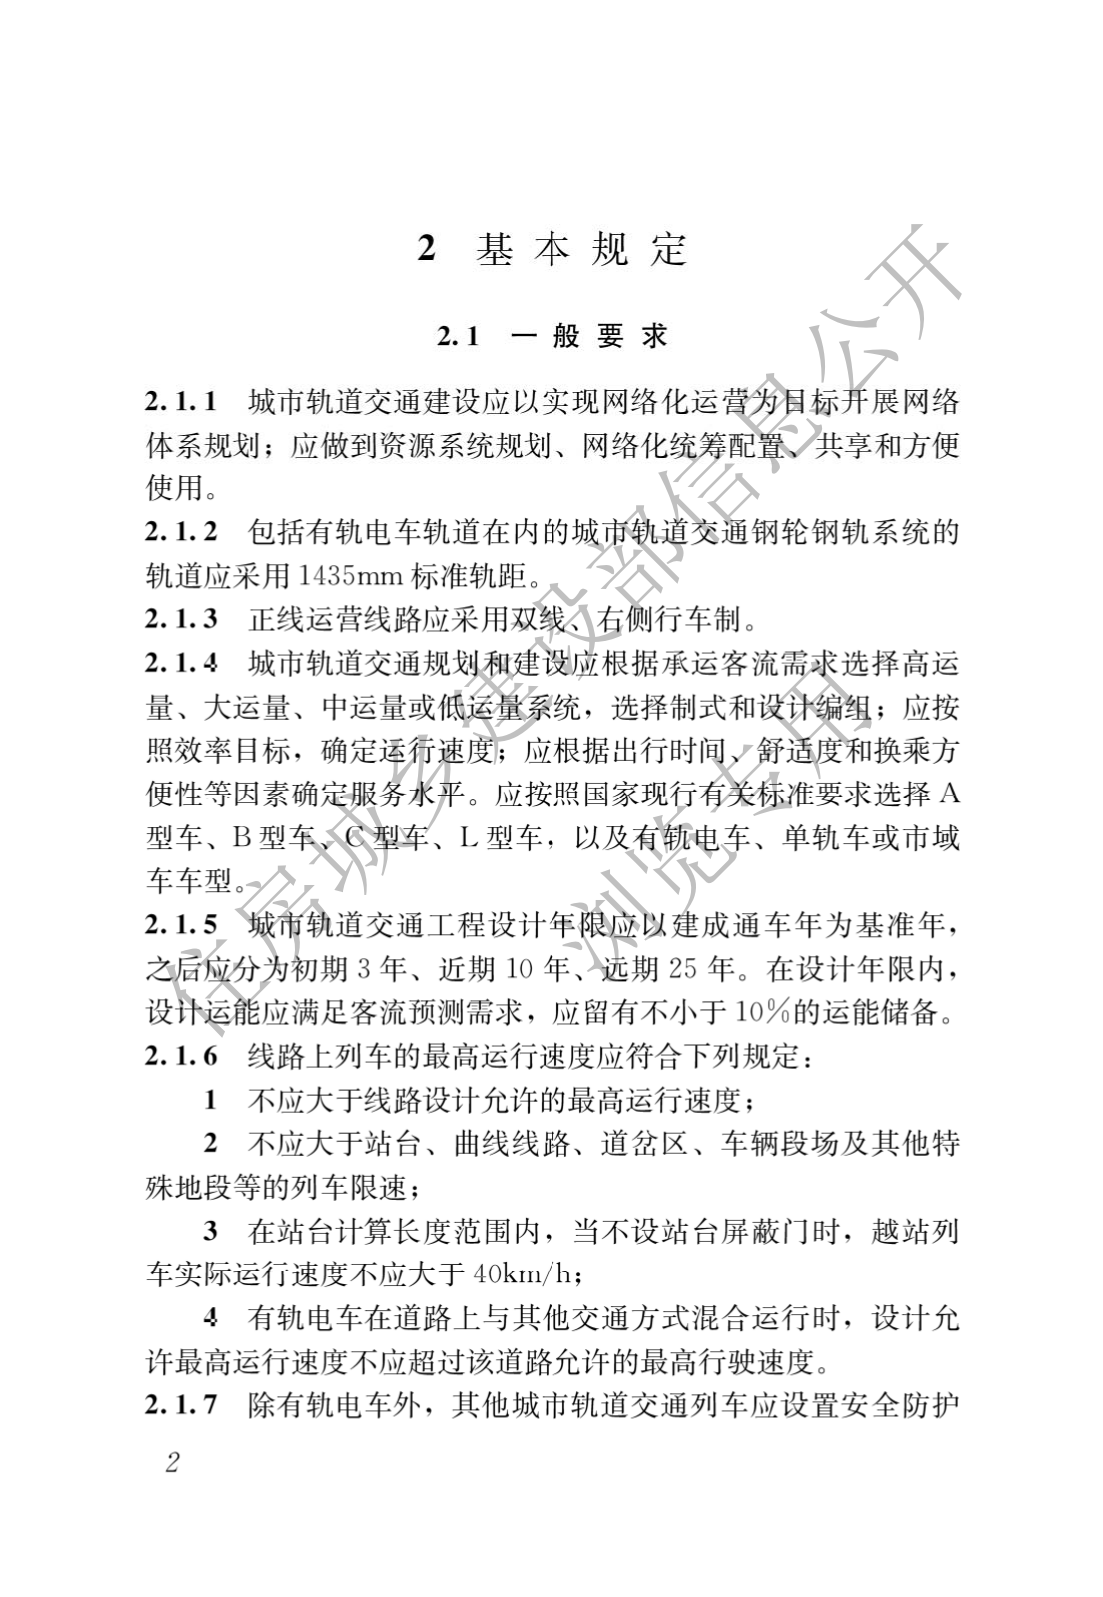 住房和城鄉建設部關于發布國家标準 《城市軌道交通工(gōng)程項目規範》的公告(圖6)